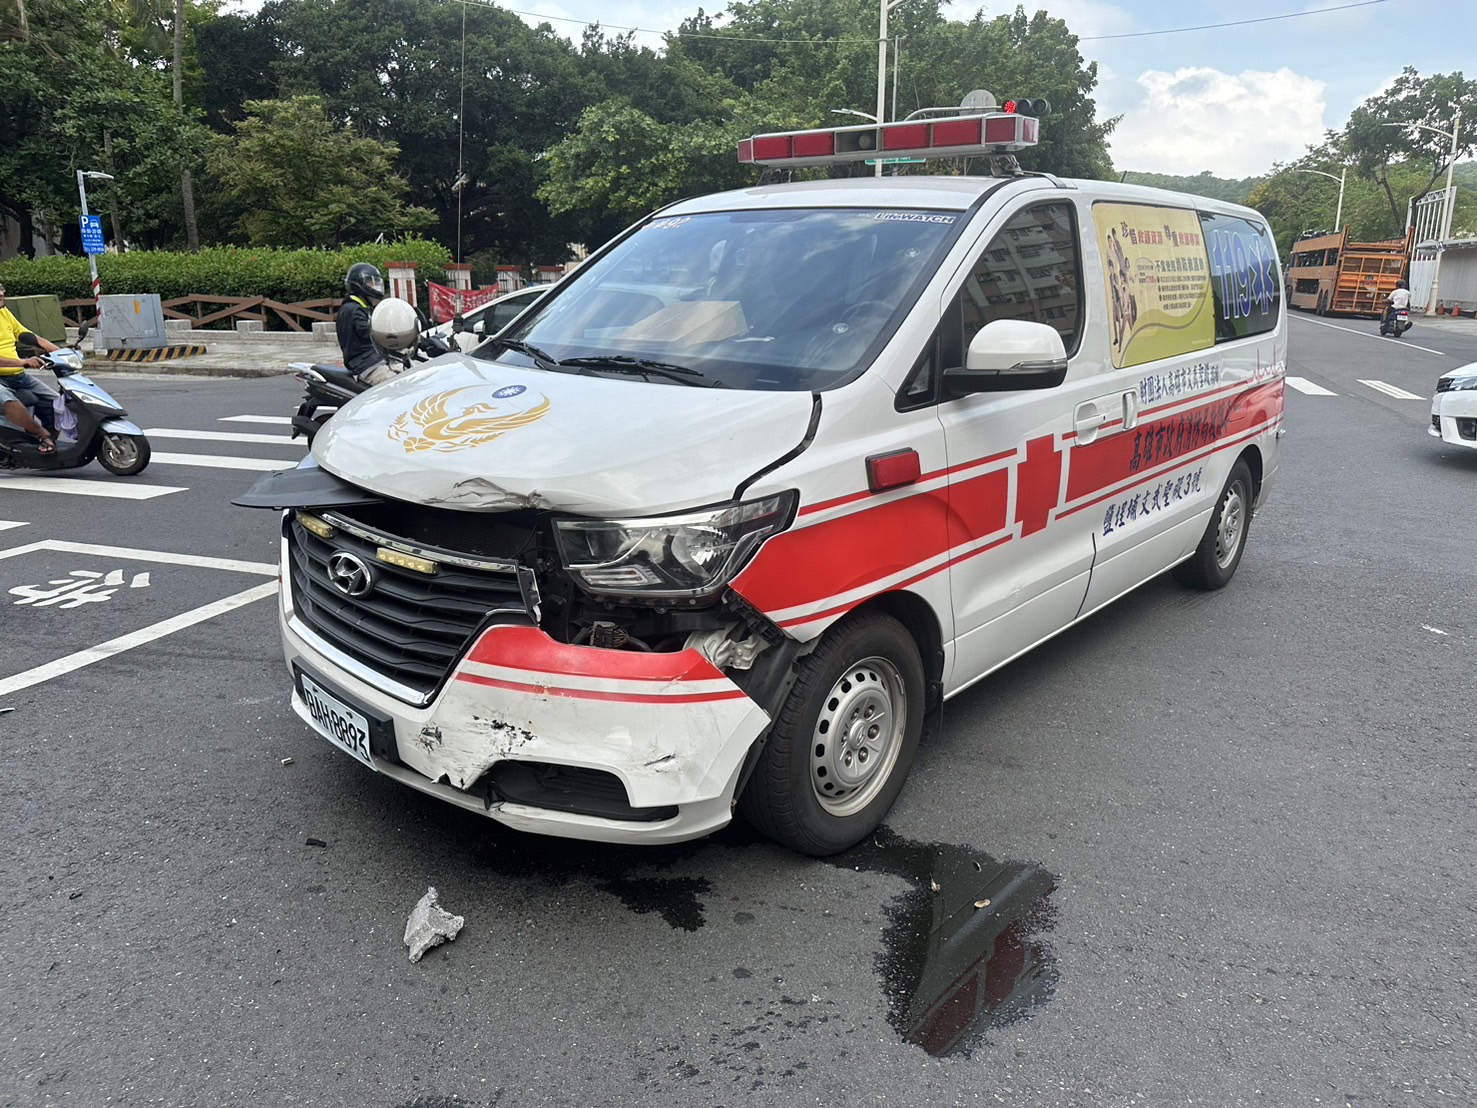 高雄市消防局救护车今天上午与轿车出车祸。记者林保光／翻摄